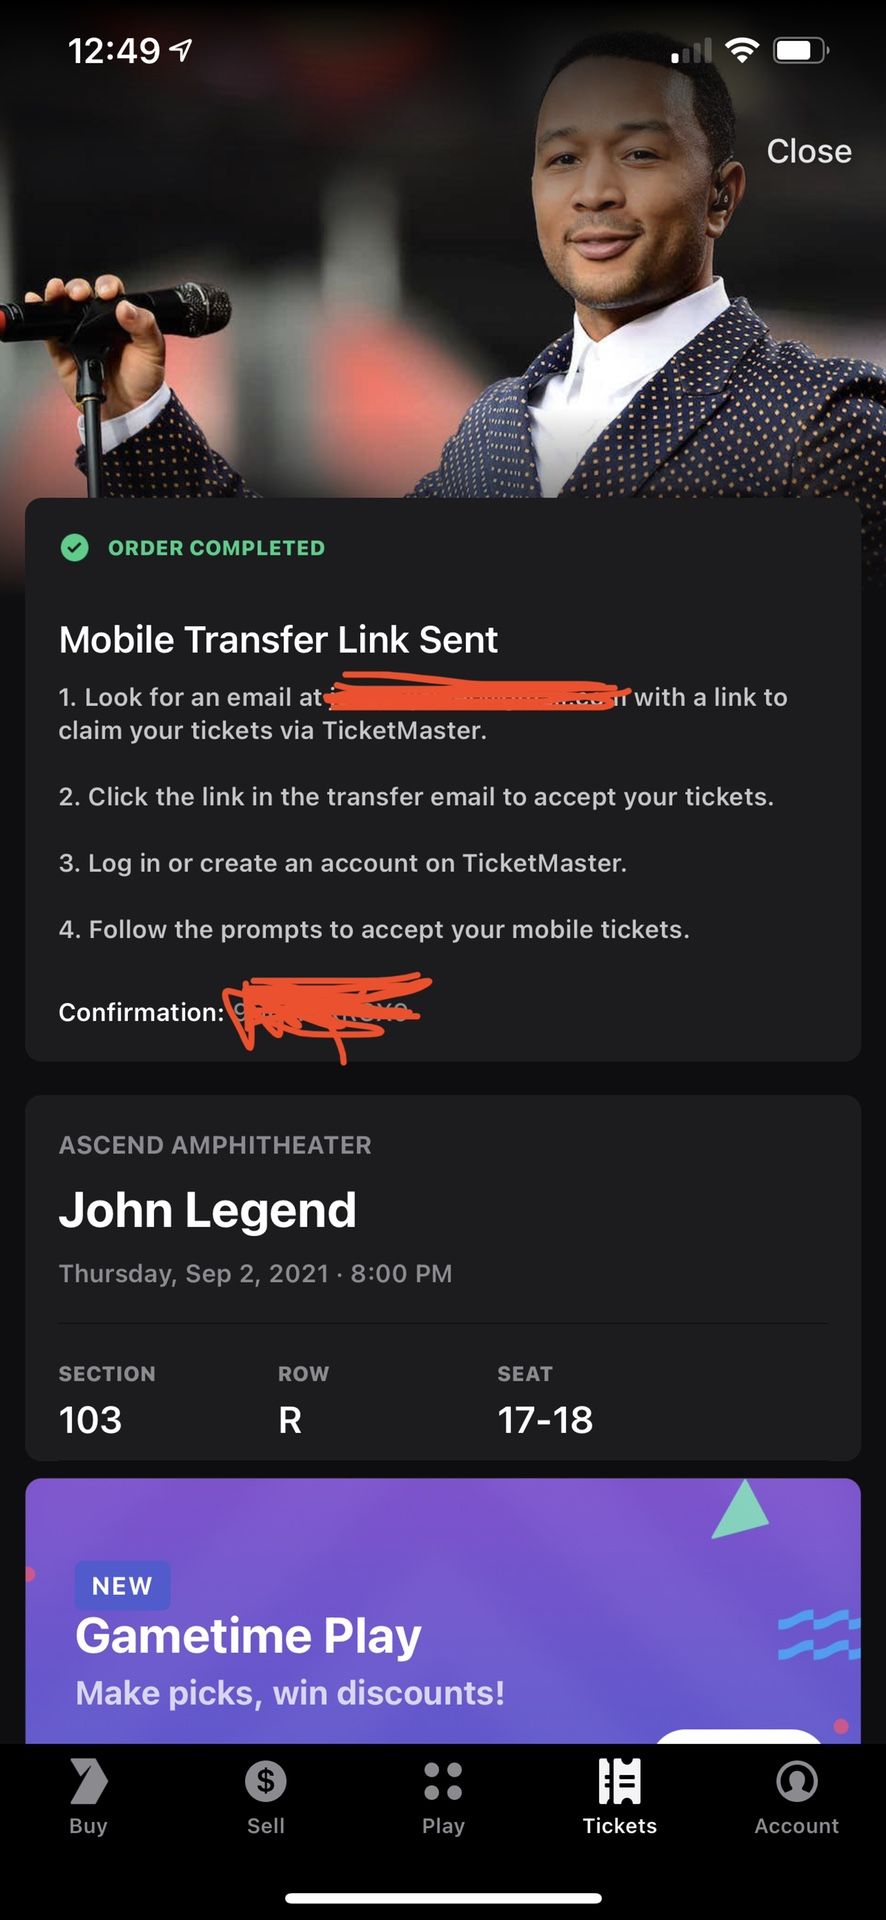 John Legend Concert Tickets 